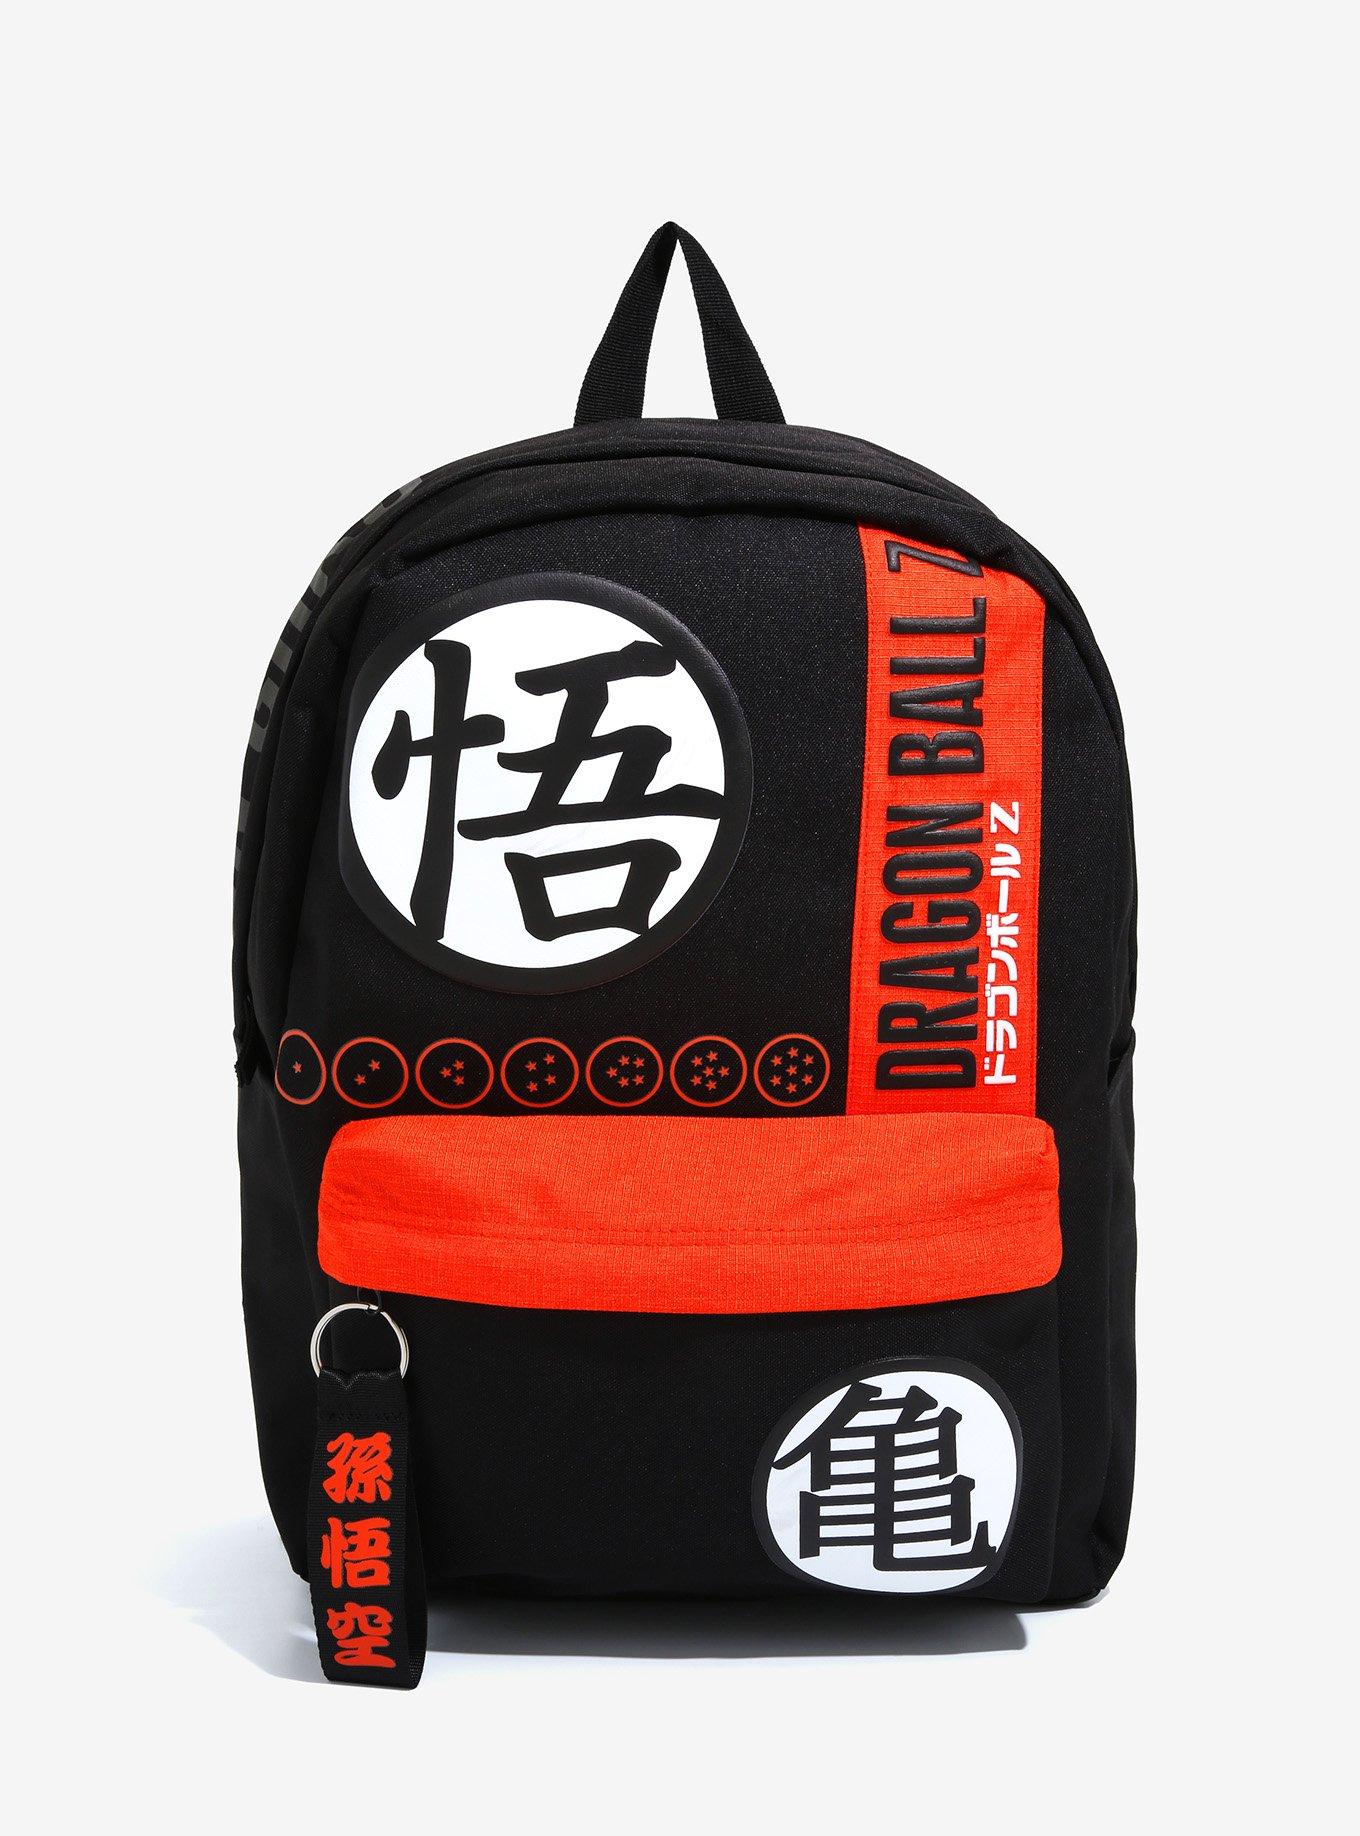 Dragon Ball Super Backpacks - Goku Black Evil Grin Backpack Bag